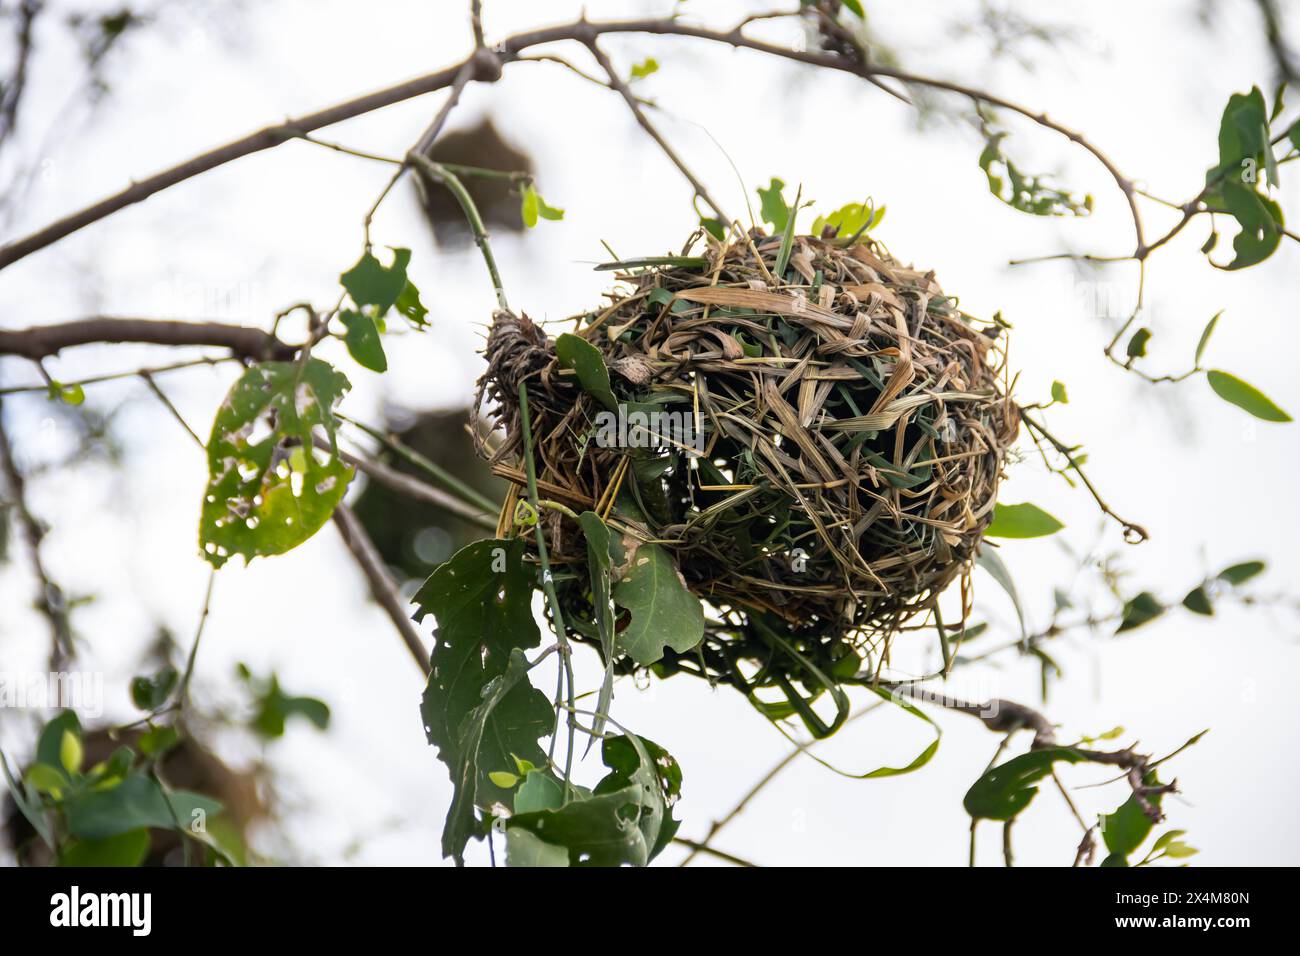 Un nido intrecciato, meticolosamente realizzato da uccelli provenienti da erba secca e rami, si trova in mezzo alla savana africana Foto Stock